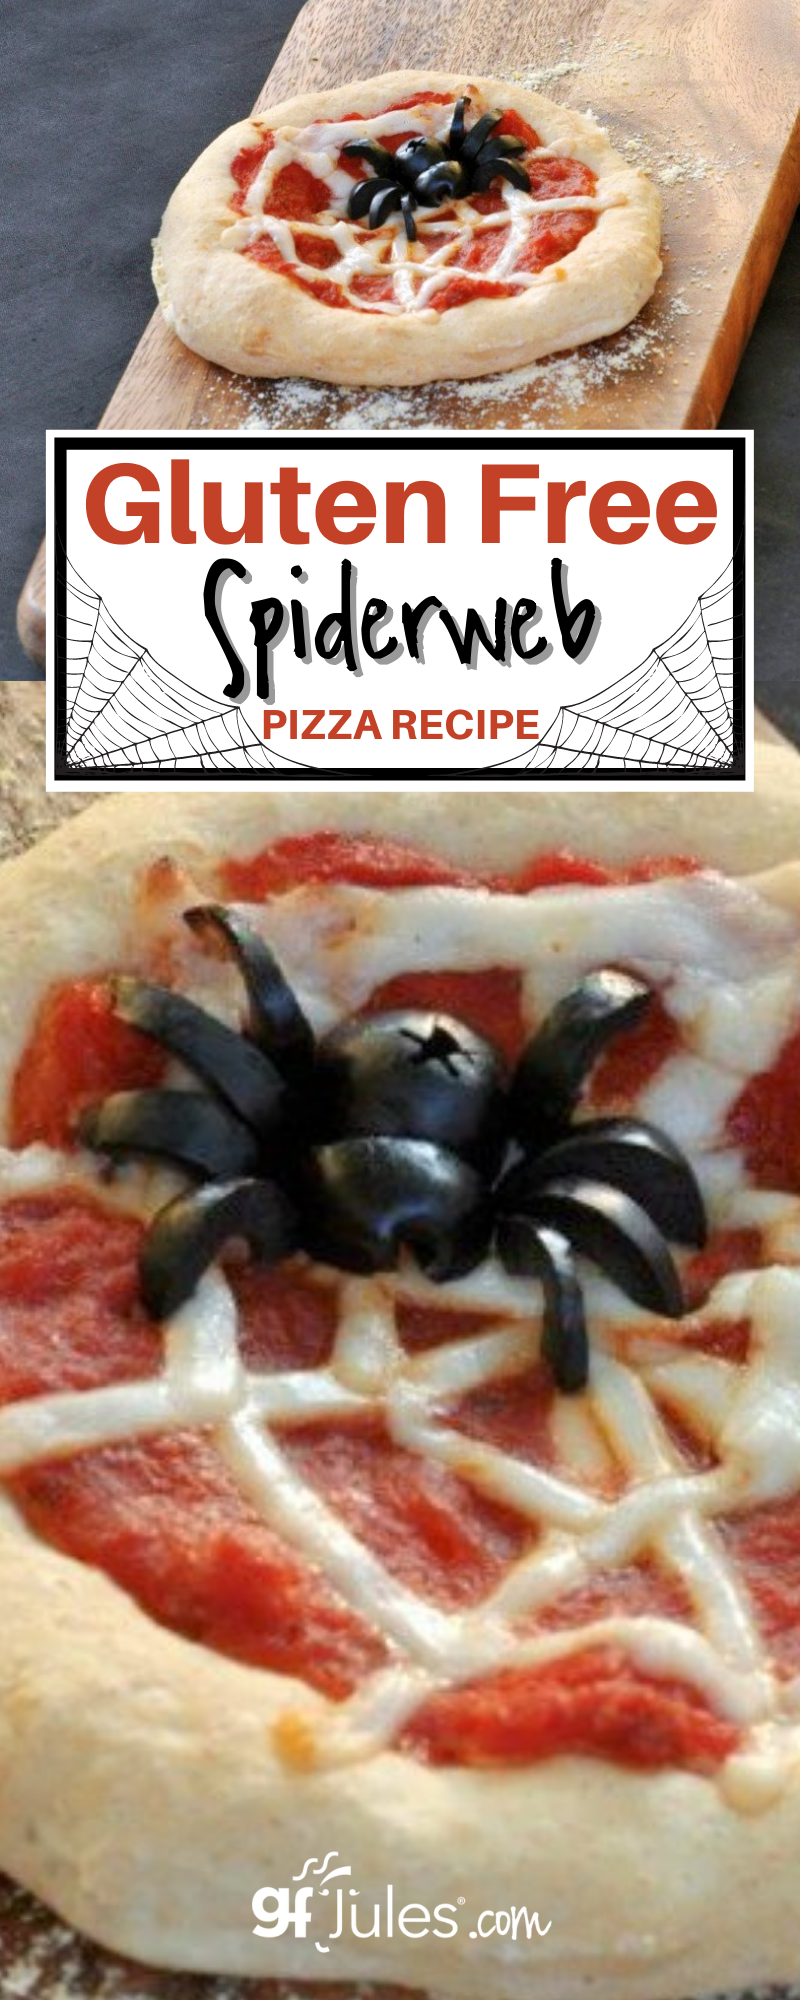 Gluten Free Spiderweb Pizza Recipe